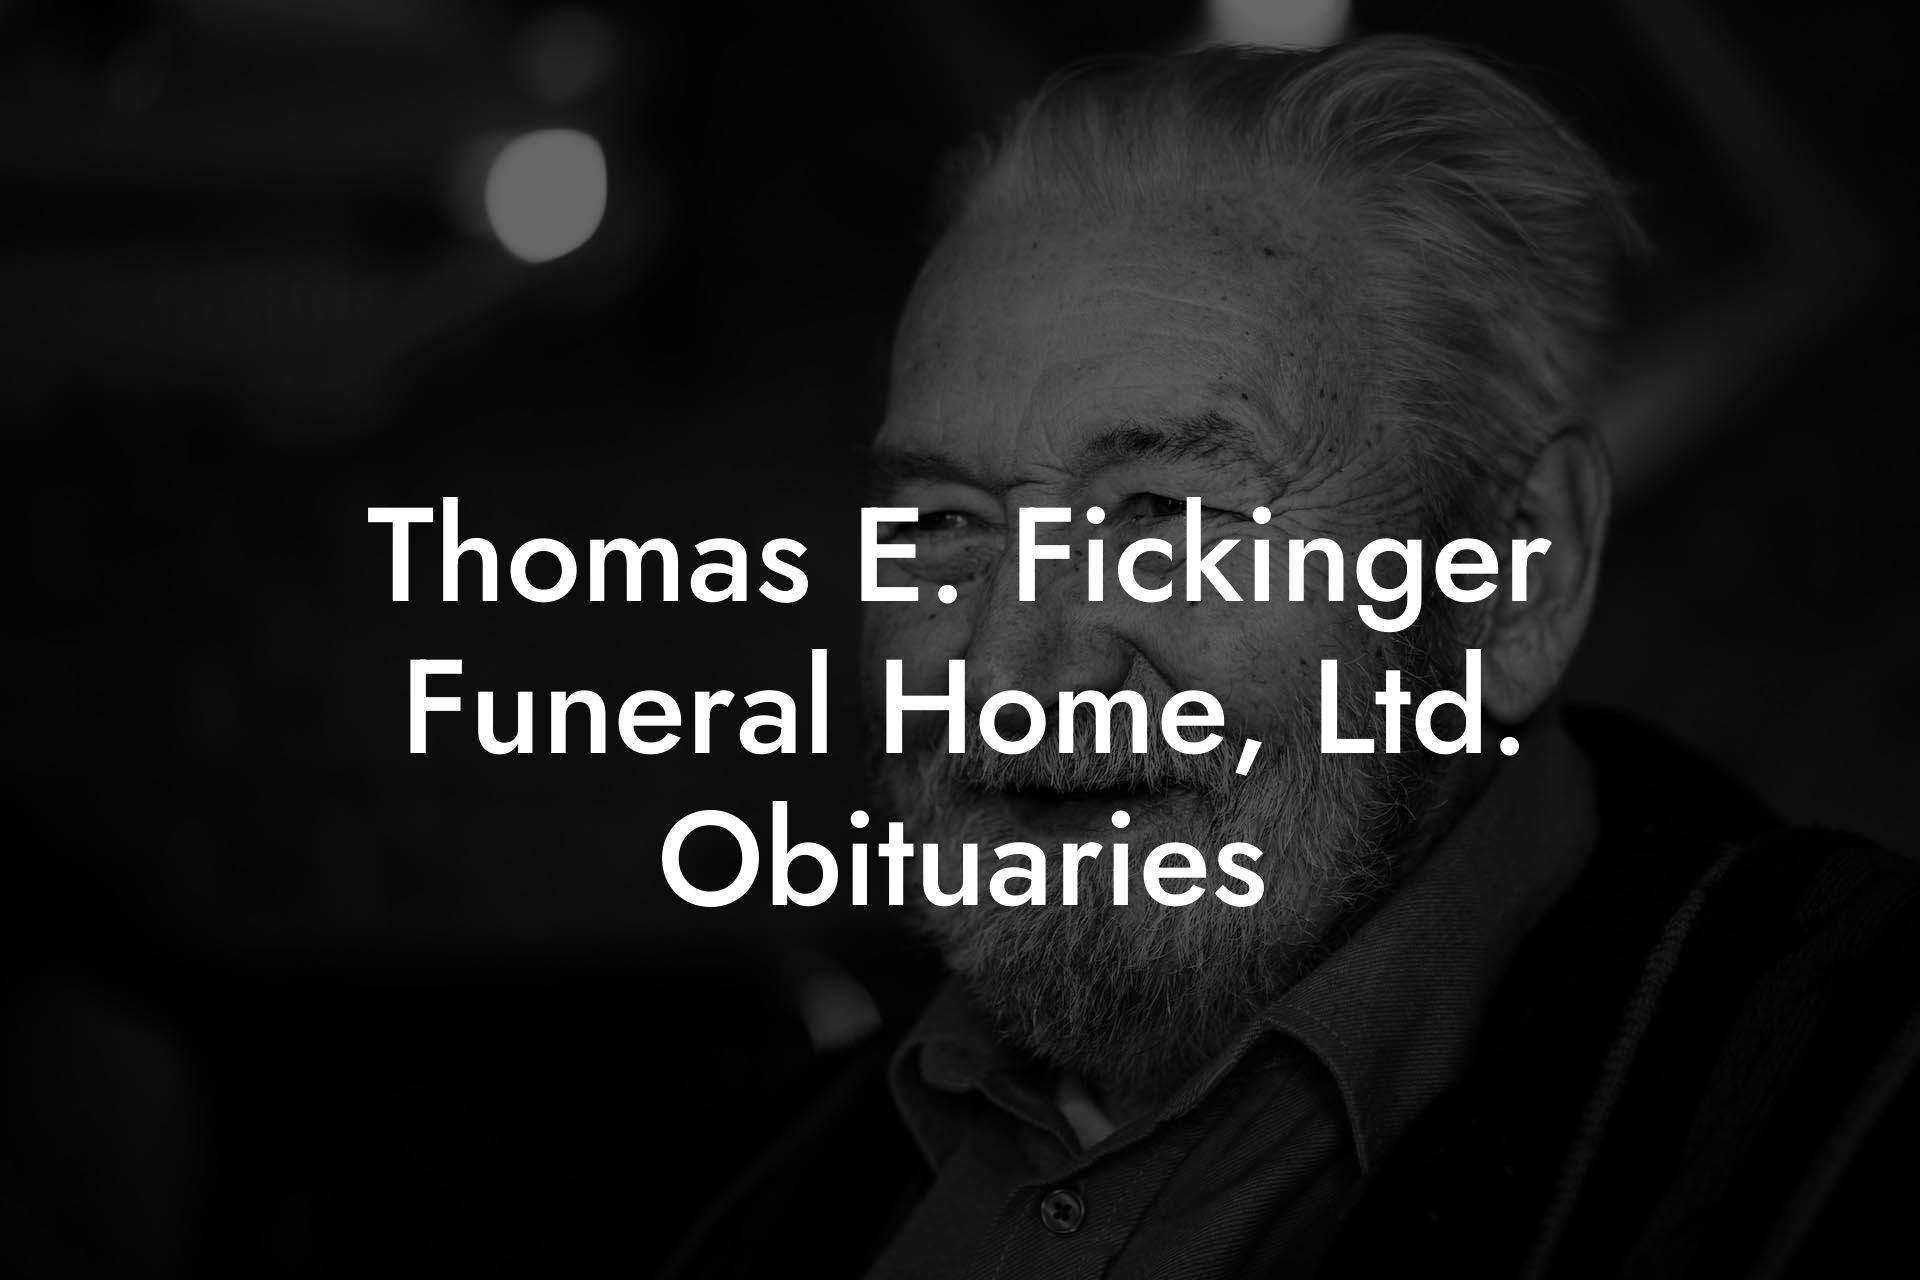 Thomas E. Fickinger Funeral Home, Ltd. Obituaries